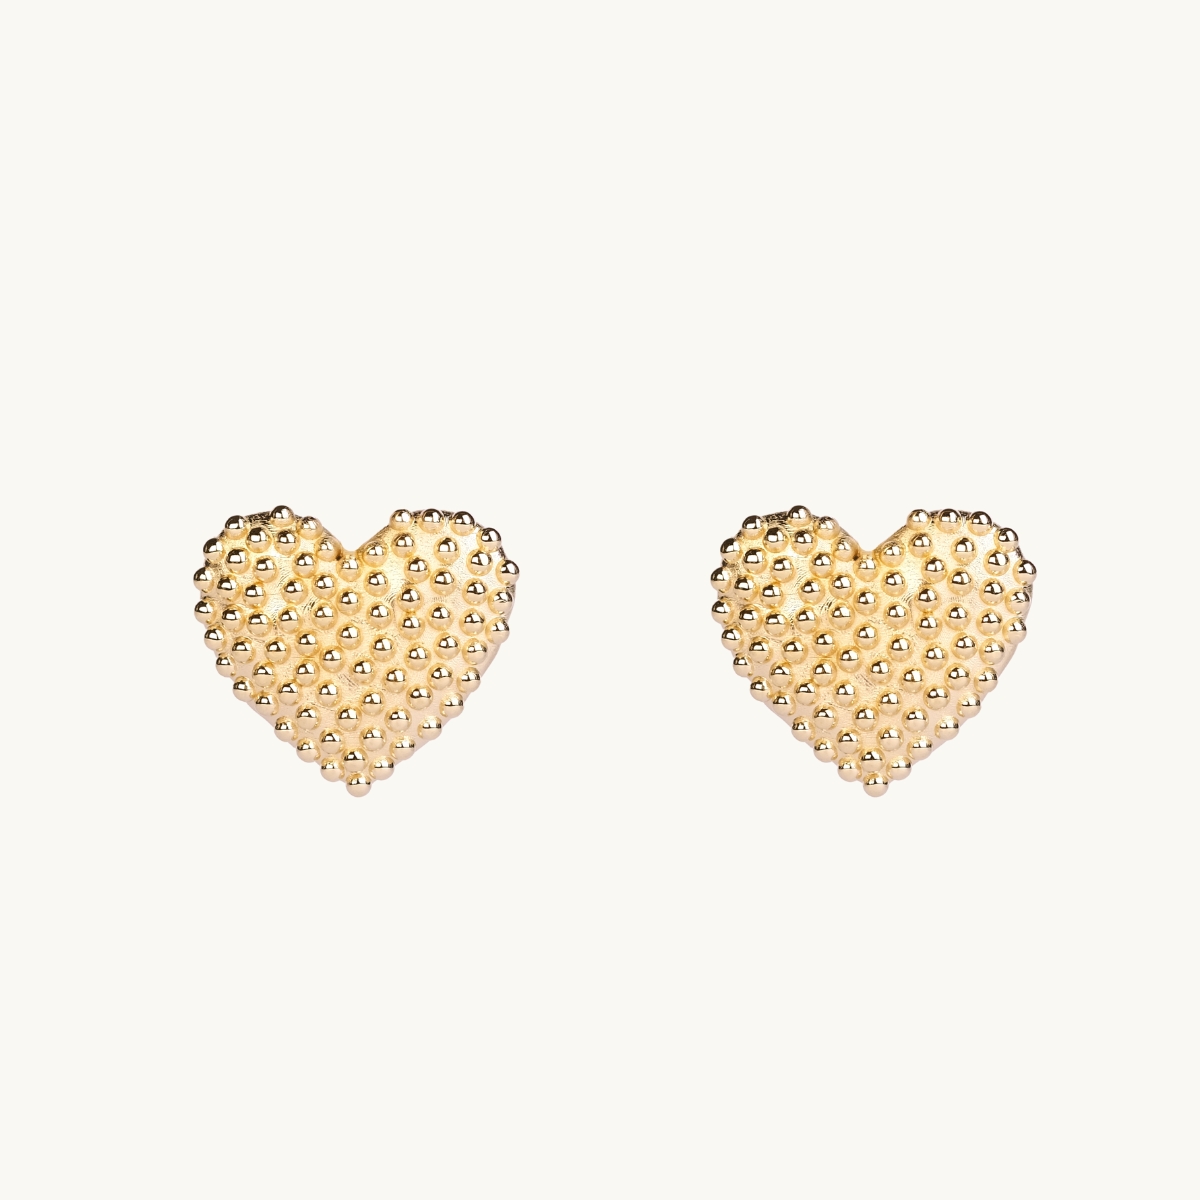 Dew drops on heart earrings in gold.